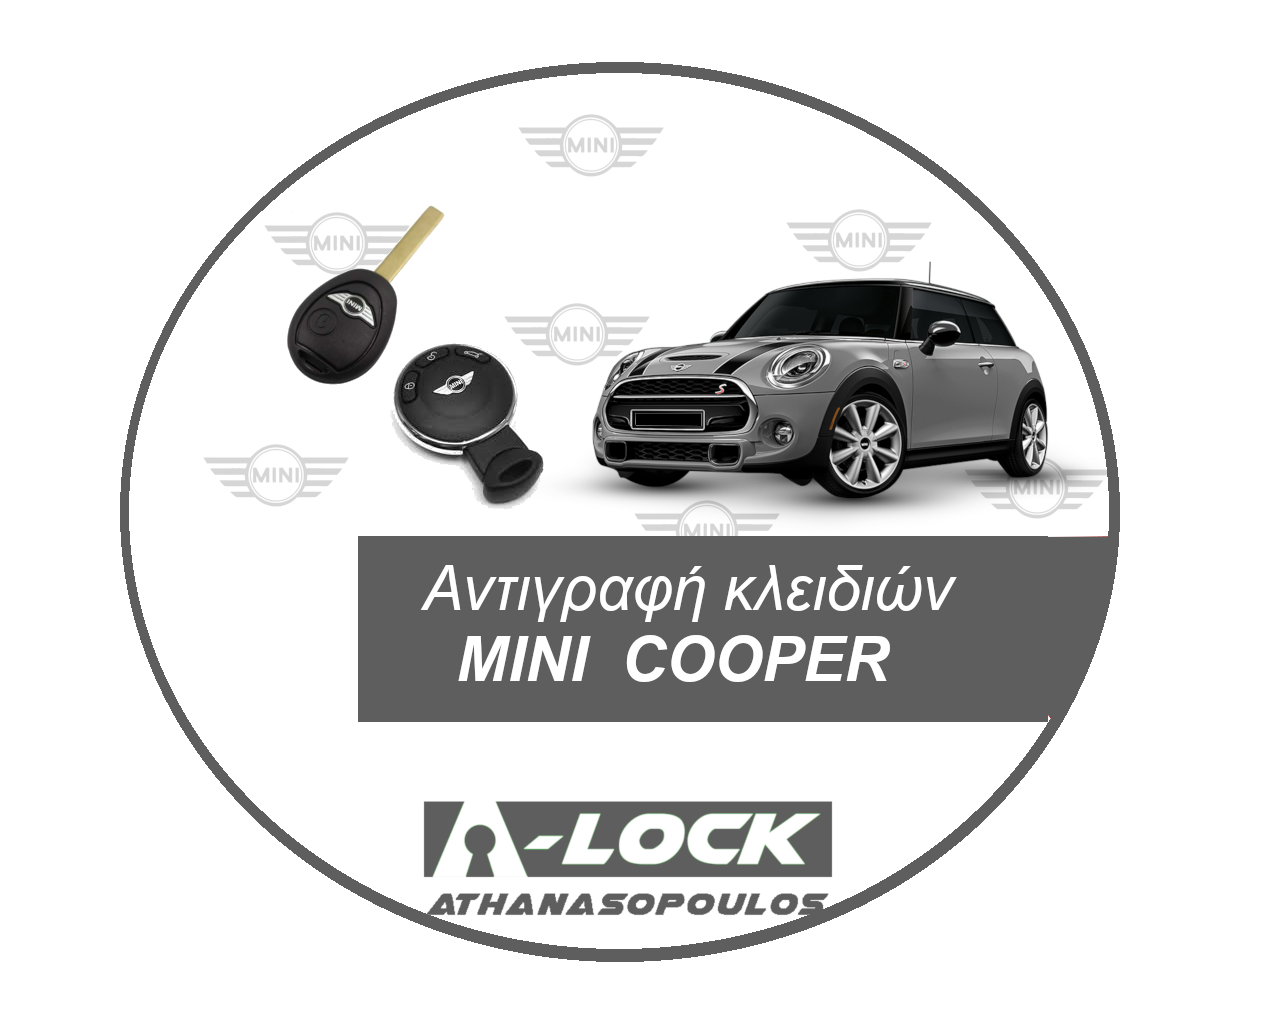 Αντιγραφές Κλειδιών Immobilizer Αυτοκινήτου MINI COOPER - 24 Ωρες Κλειδαράς Γαλάτσι A-Lock Αθανασόπουλος